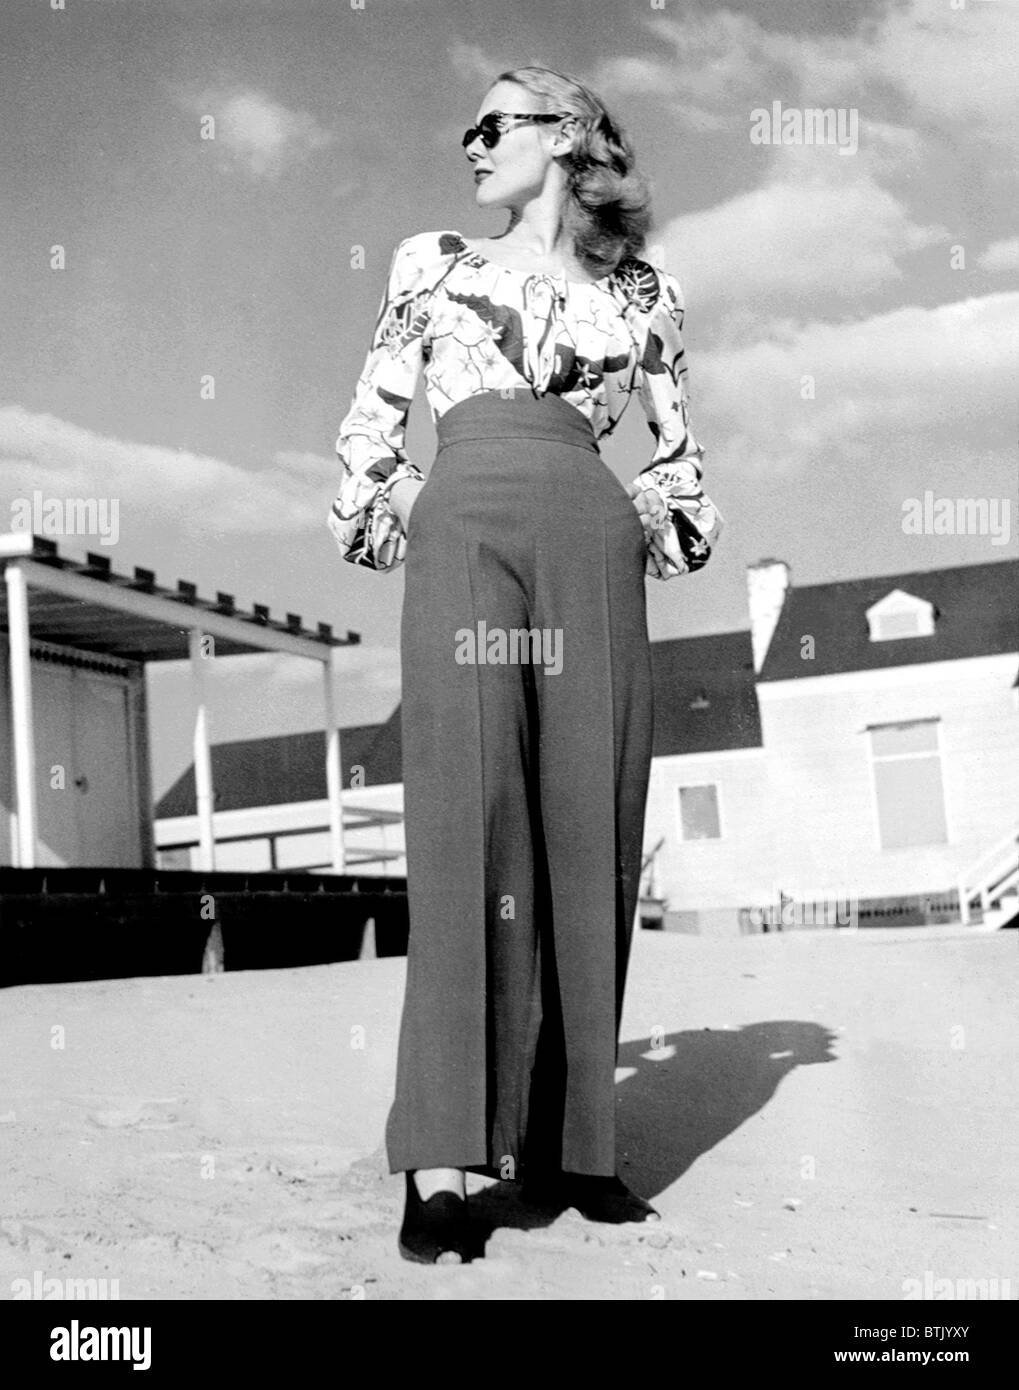 La mode des années 1940 Banque de photographies et d'images à haute  résolution - Alamy